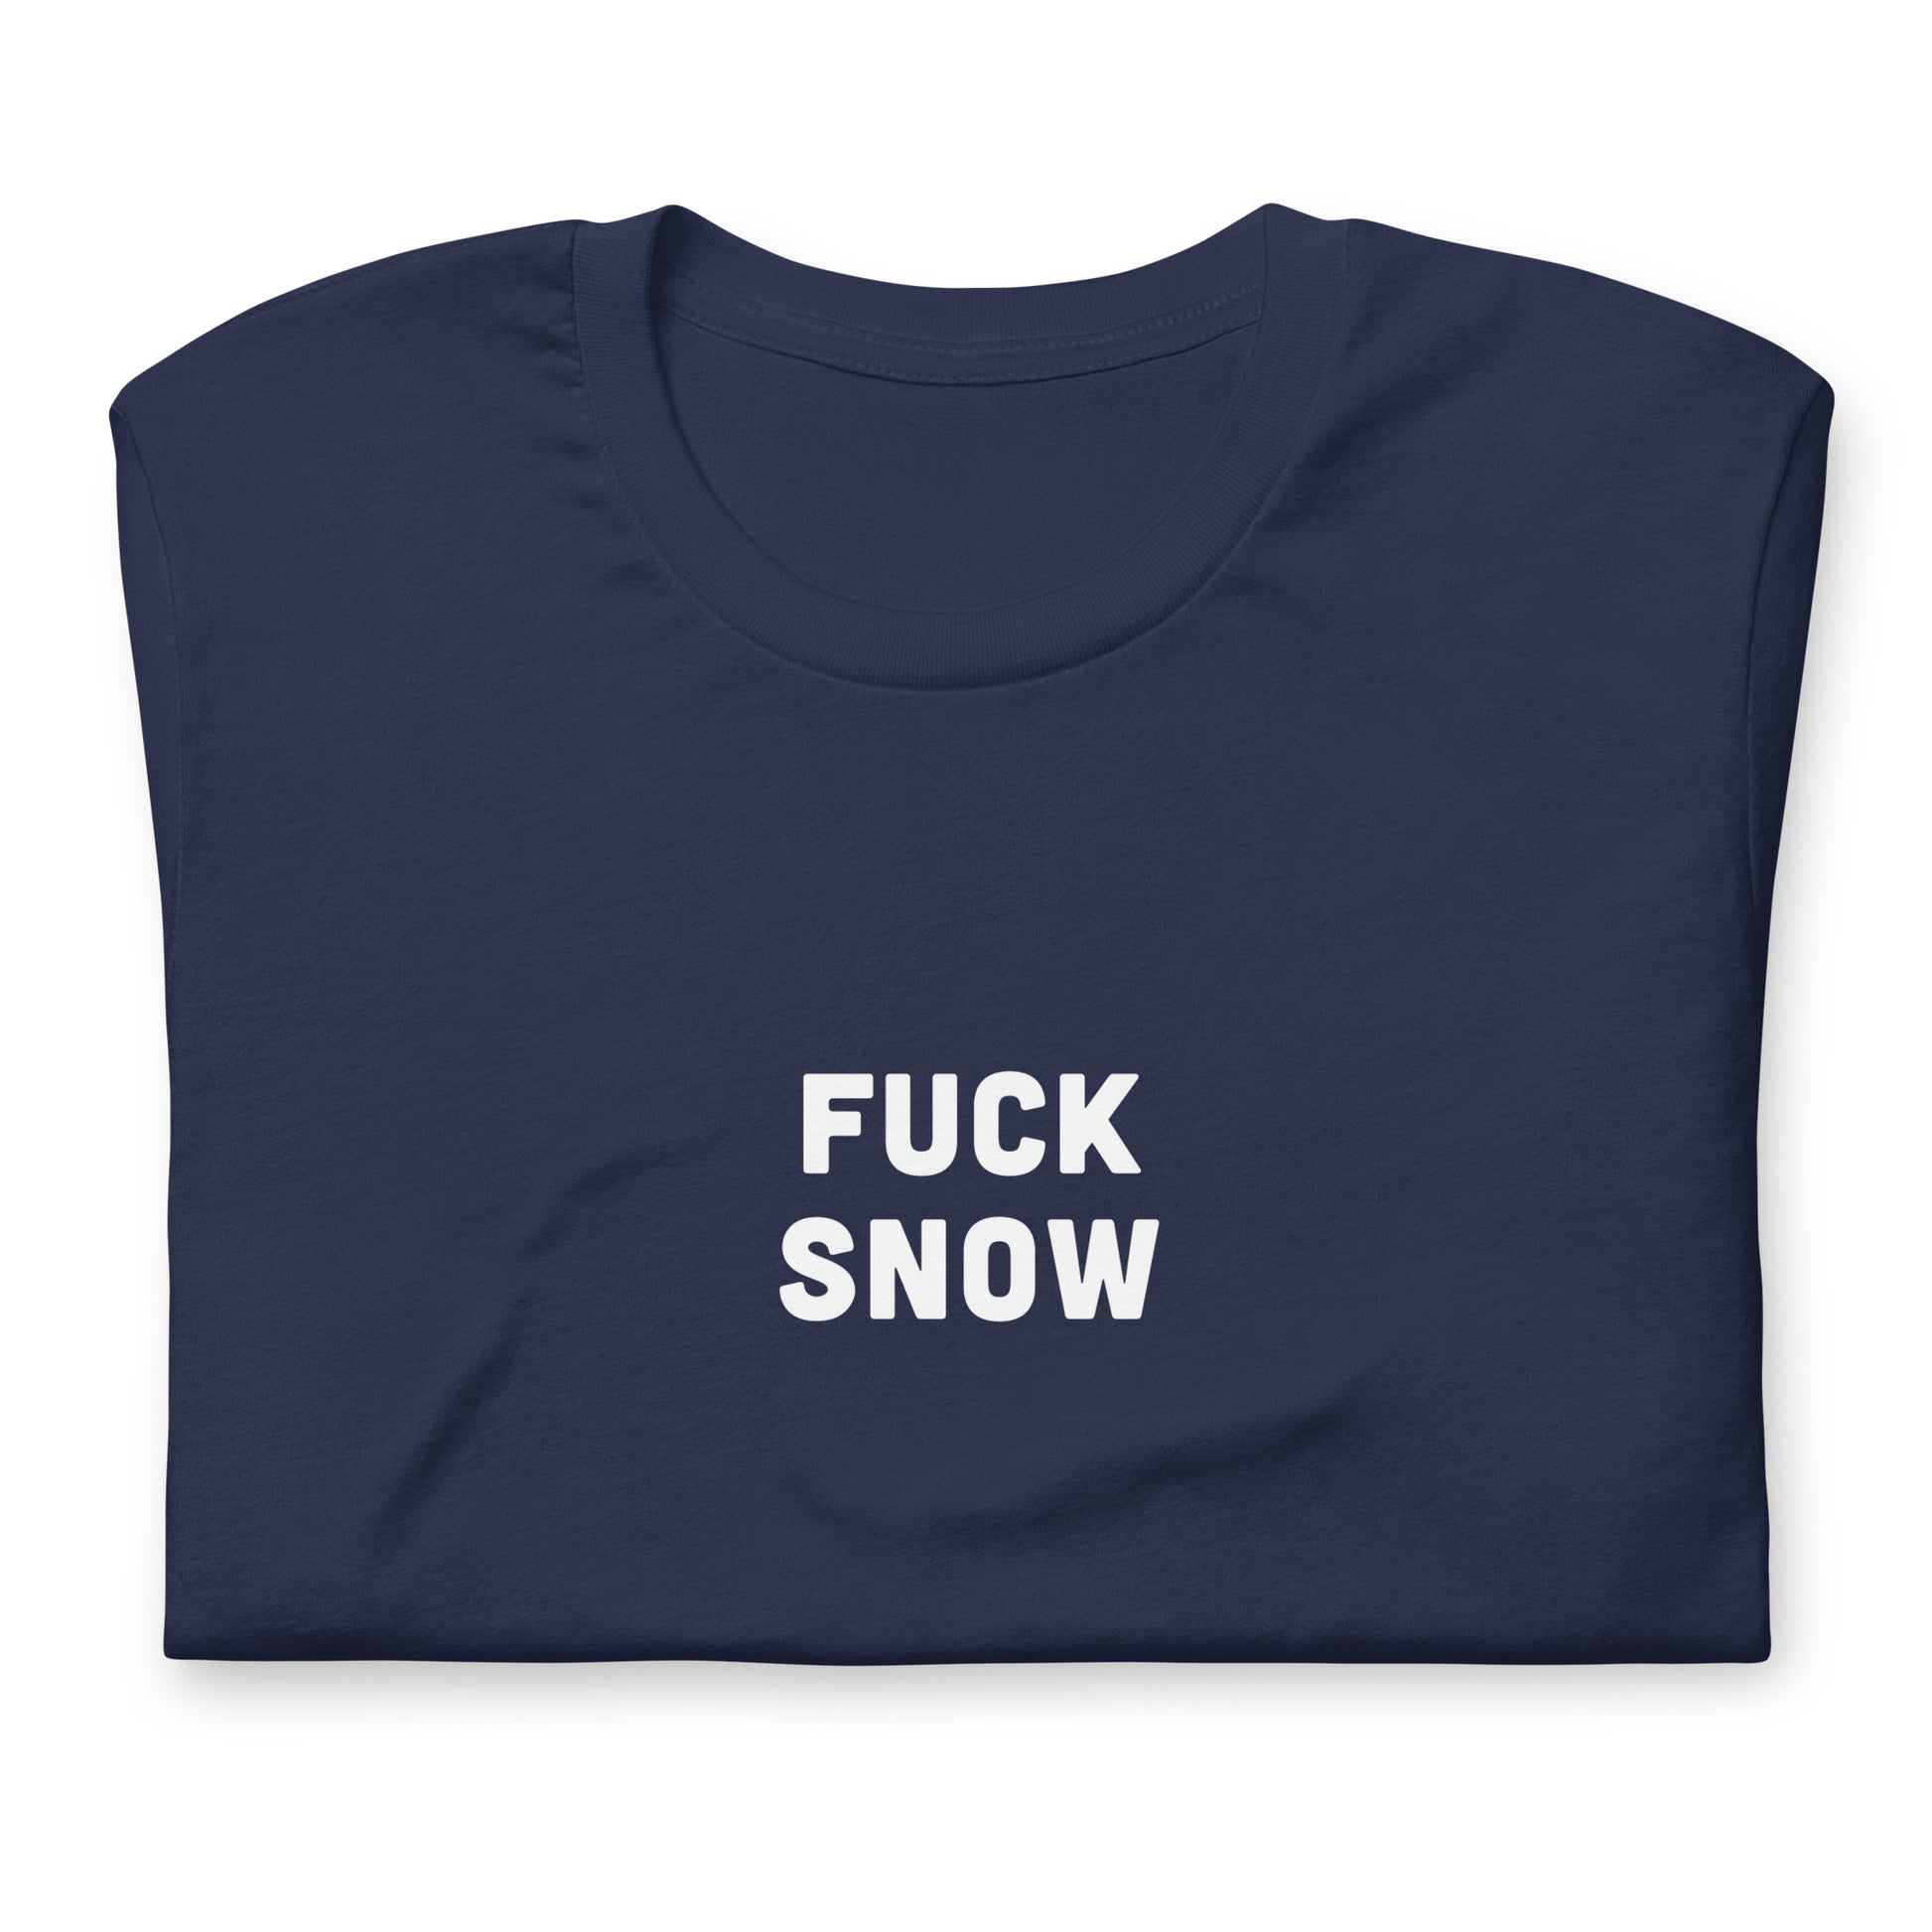 Fuck Snow T-Shirt Size L Color Black